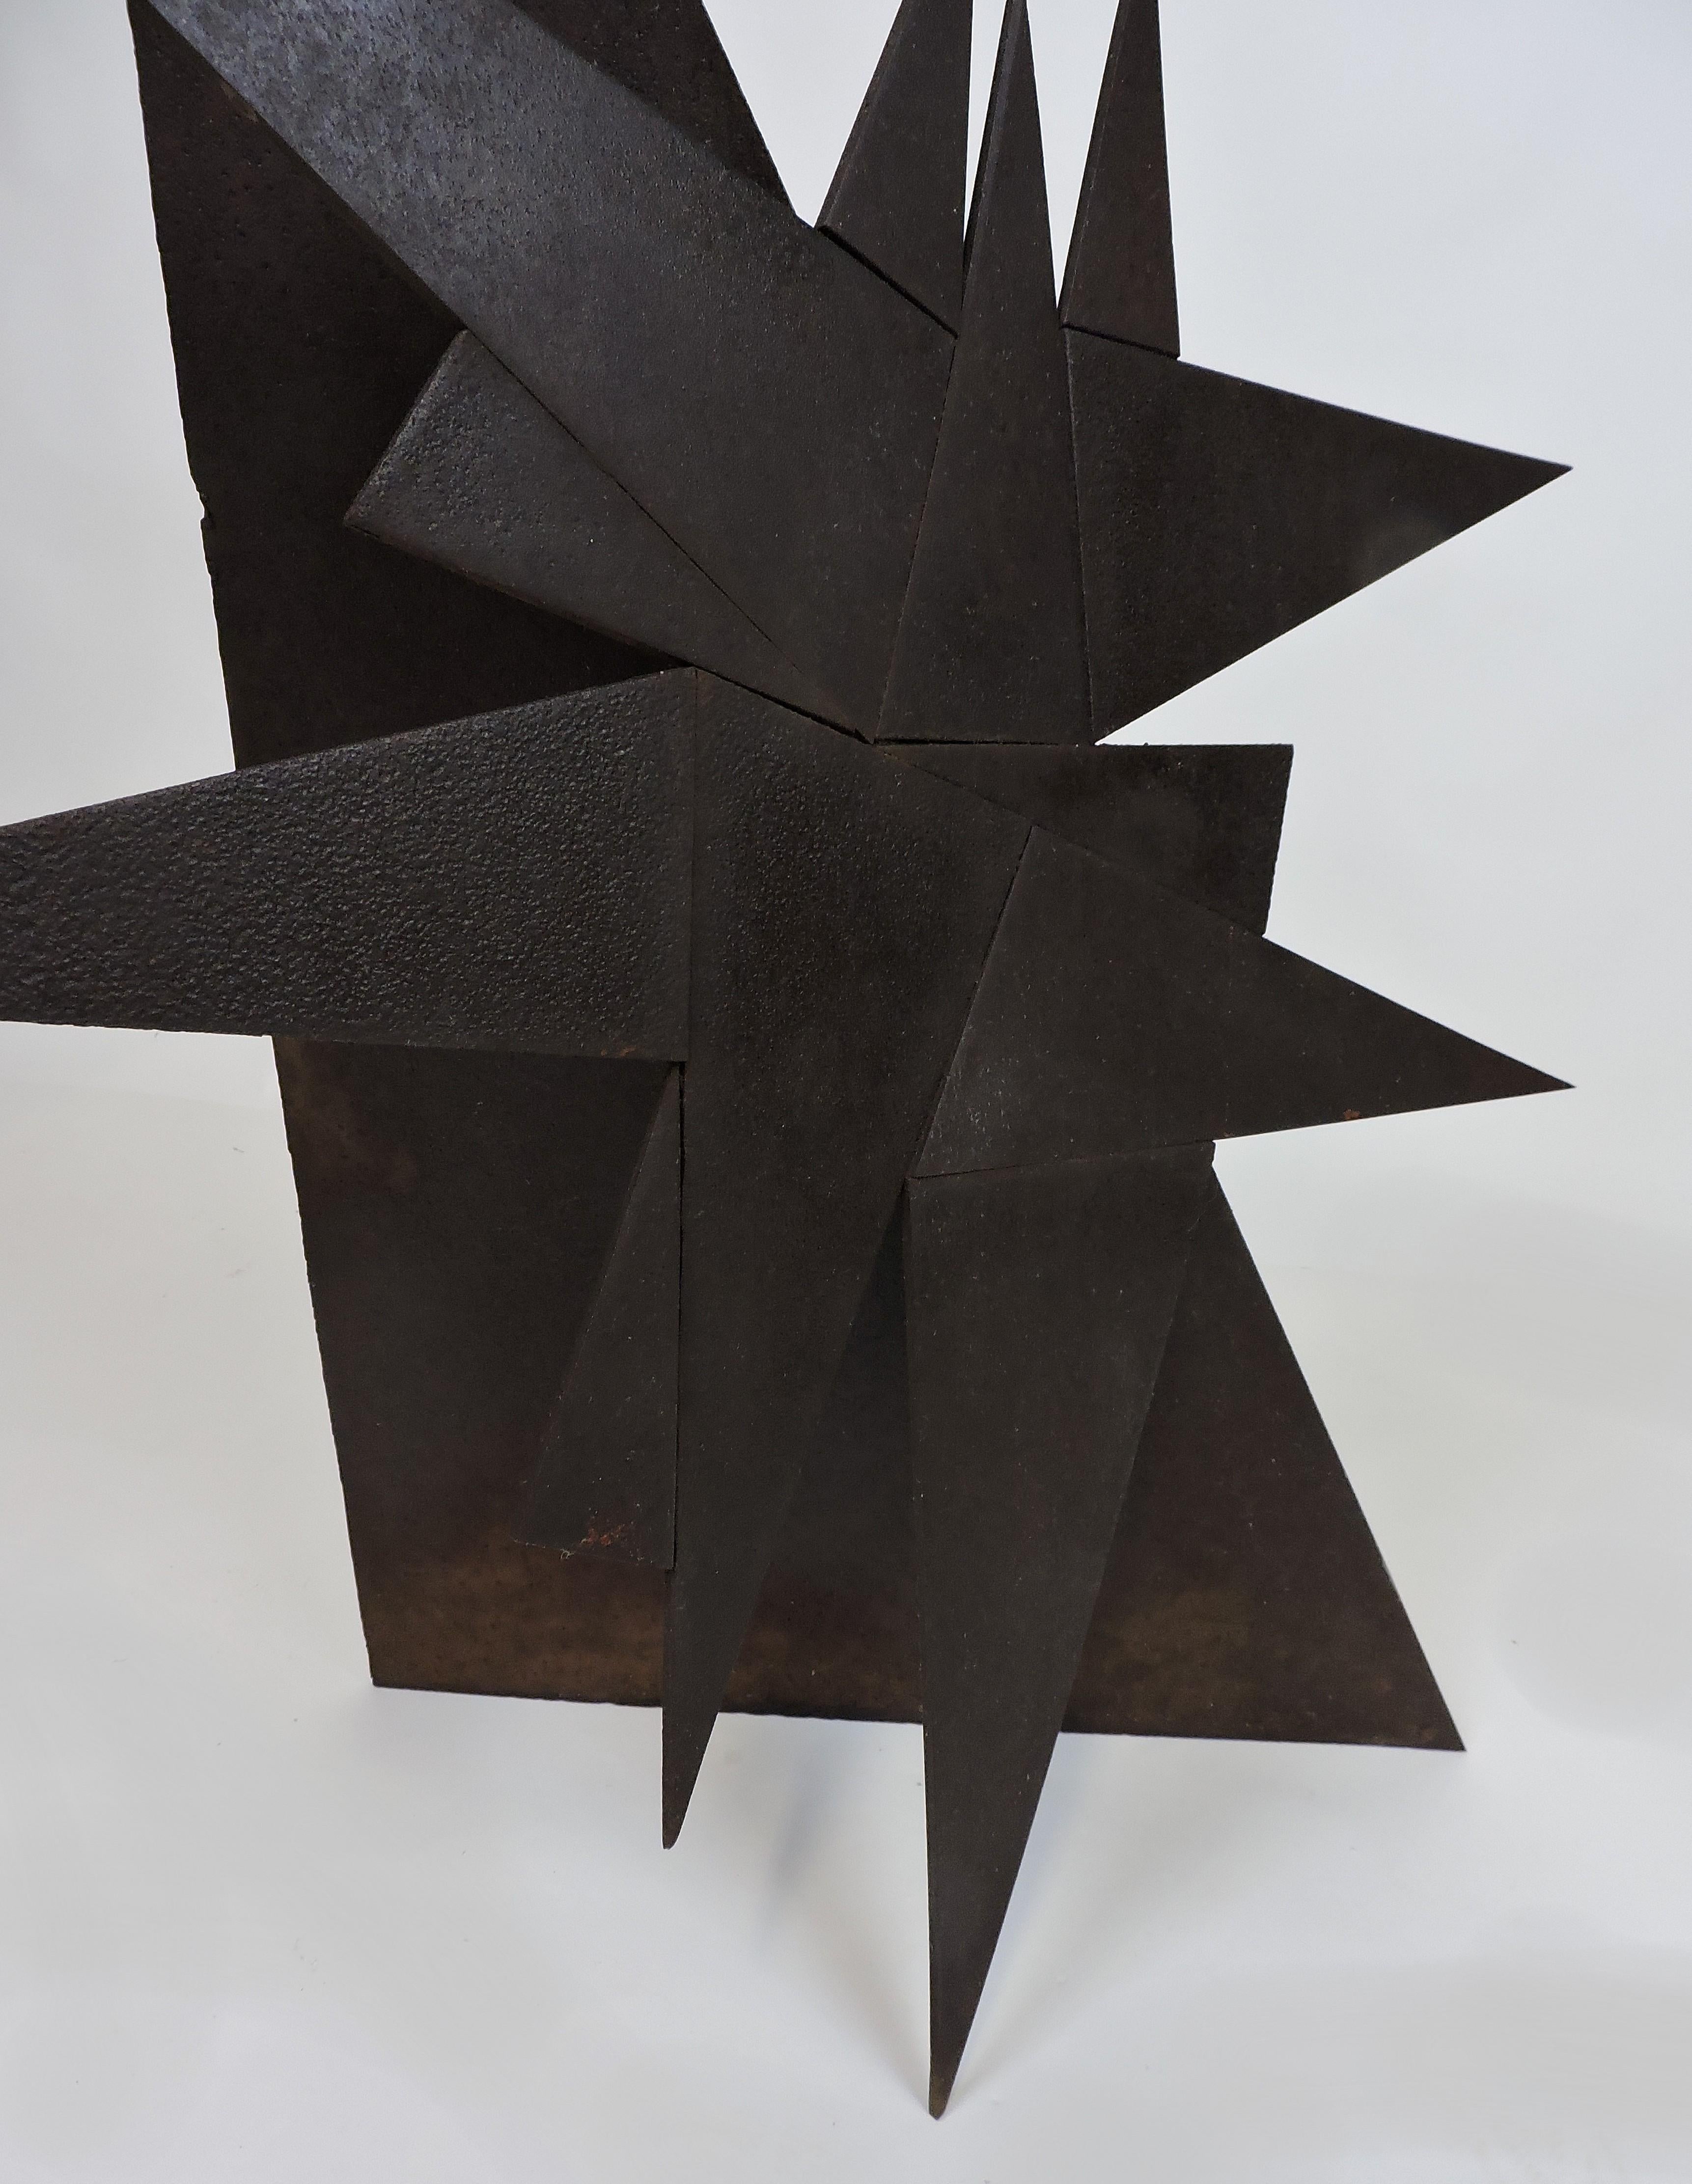 Abstract Industrial Welded Steel Sculpture 